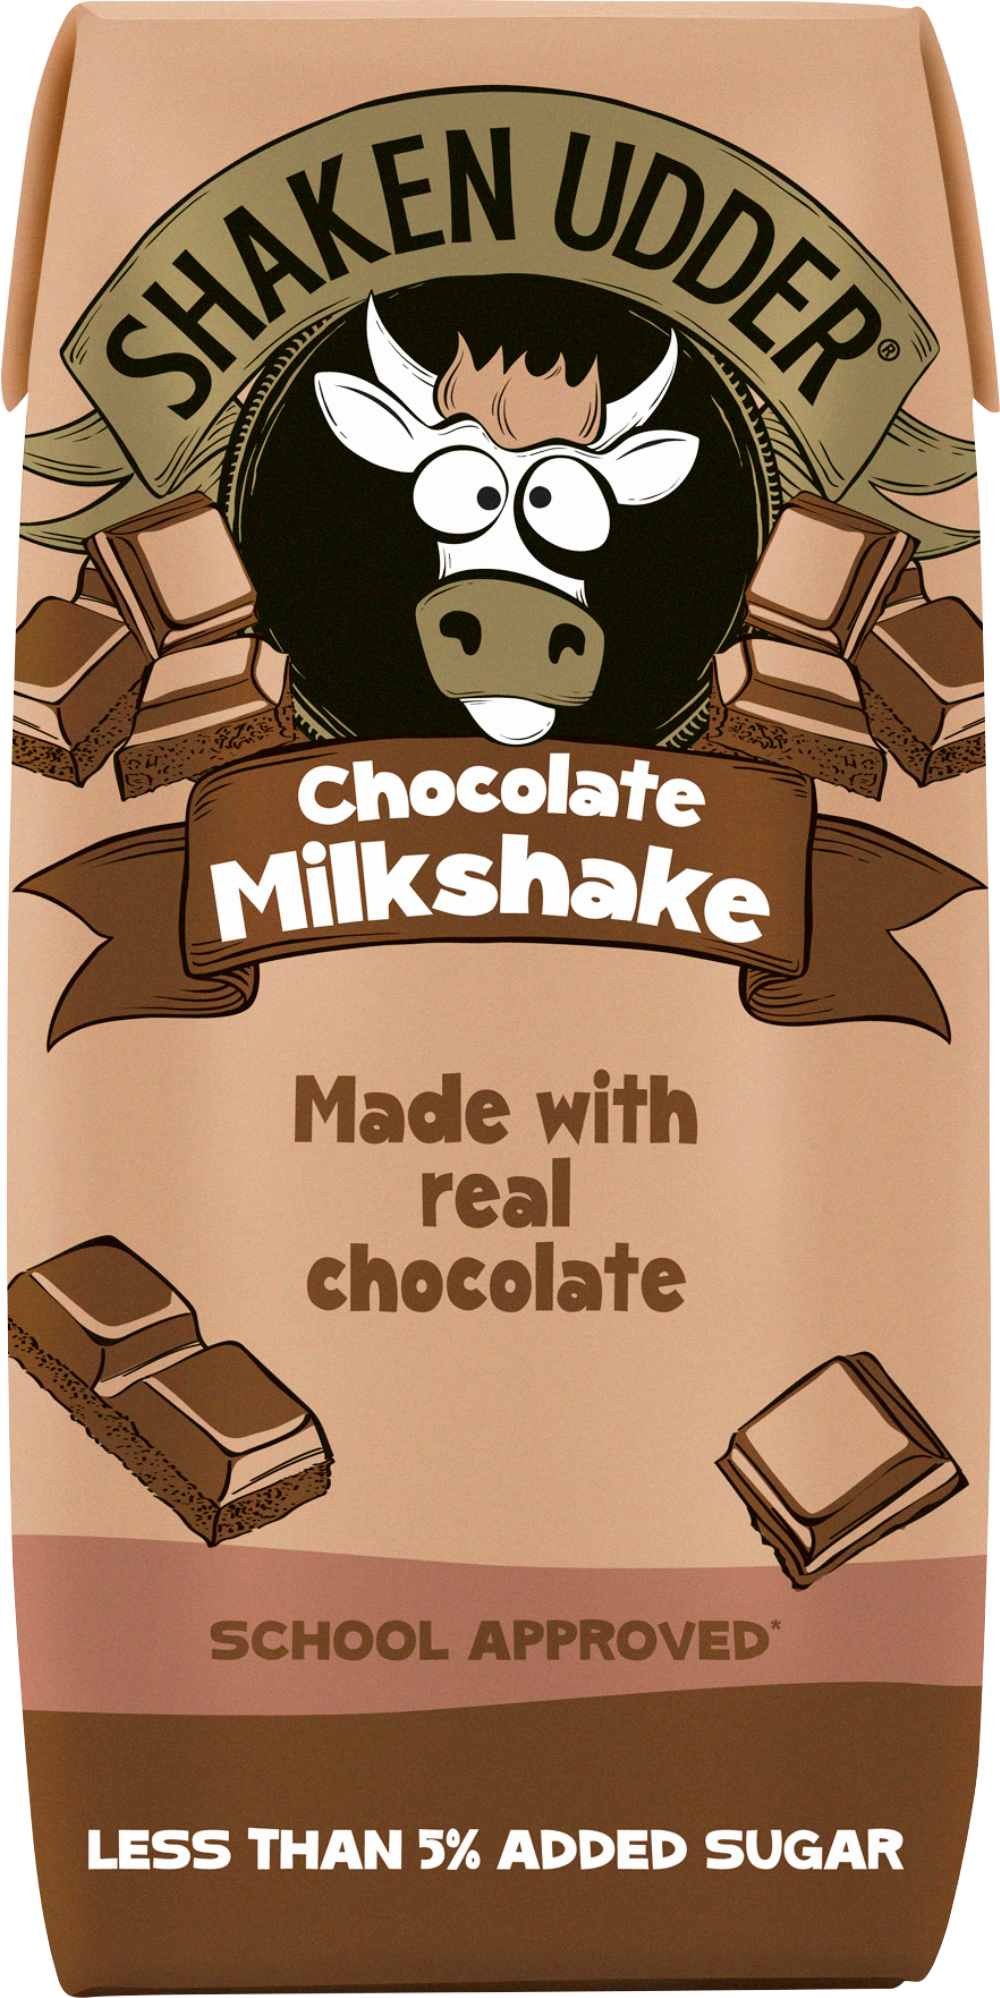 SHAKEN UDDER Chocolate Milkshake - Carton 200ml